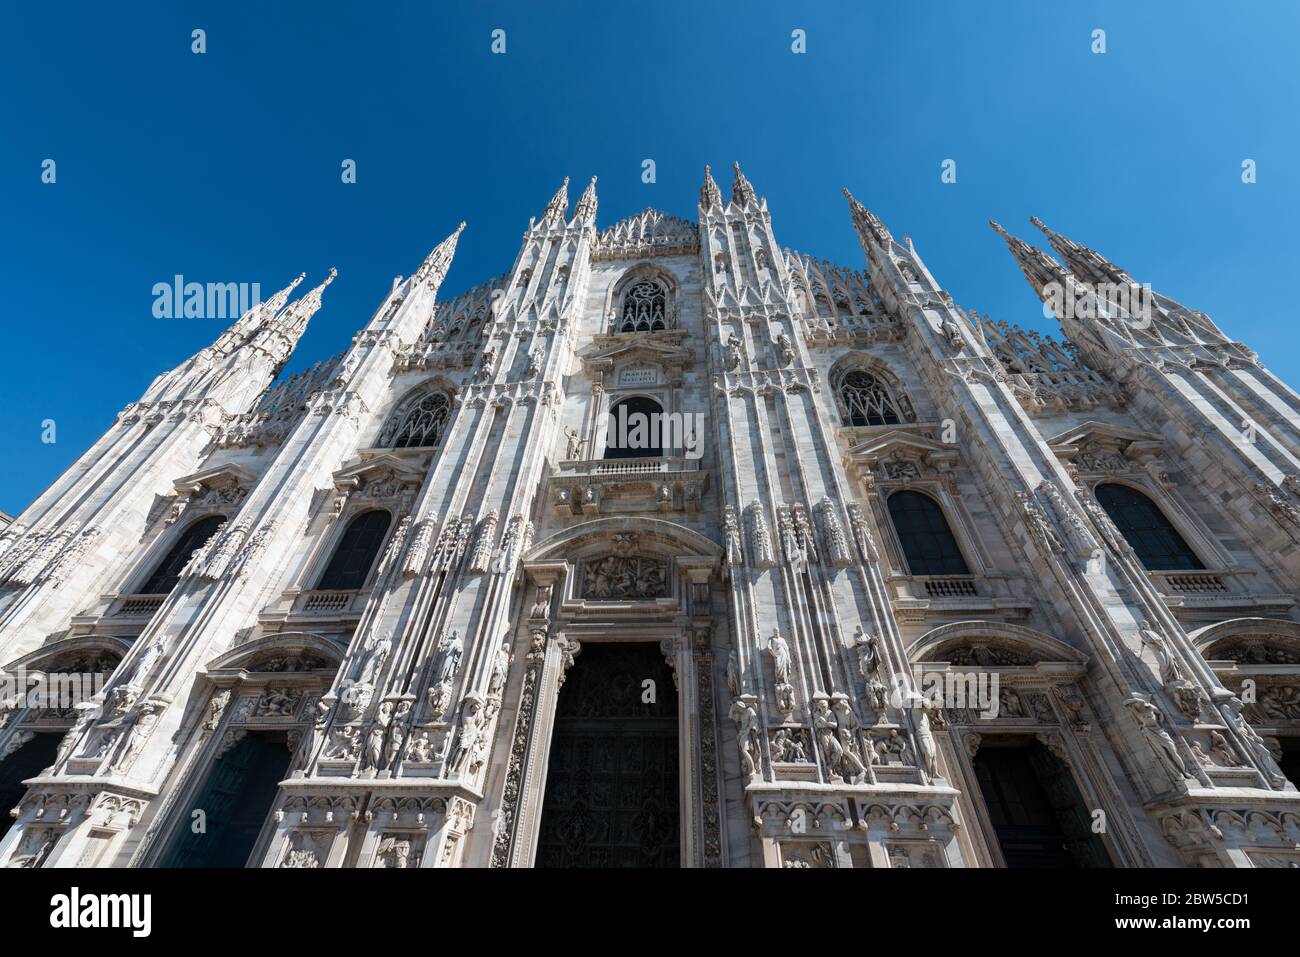 Immagine orizzontale della facciata del Duomo di Milano, importante cattedrale cattolica di Milano. Foto Stock